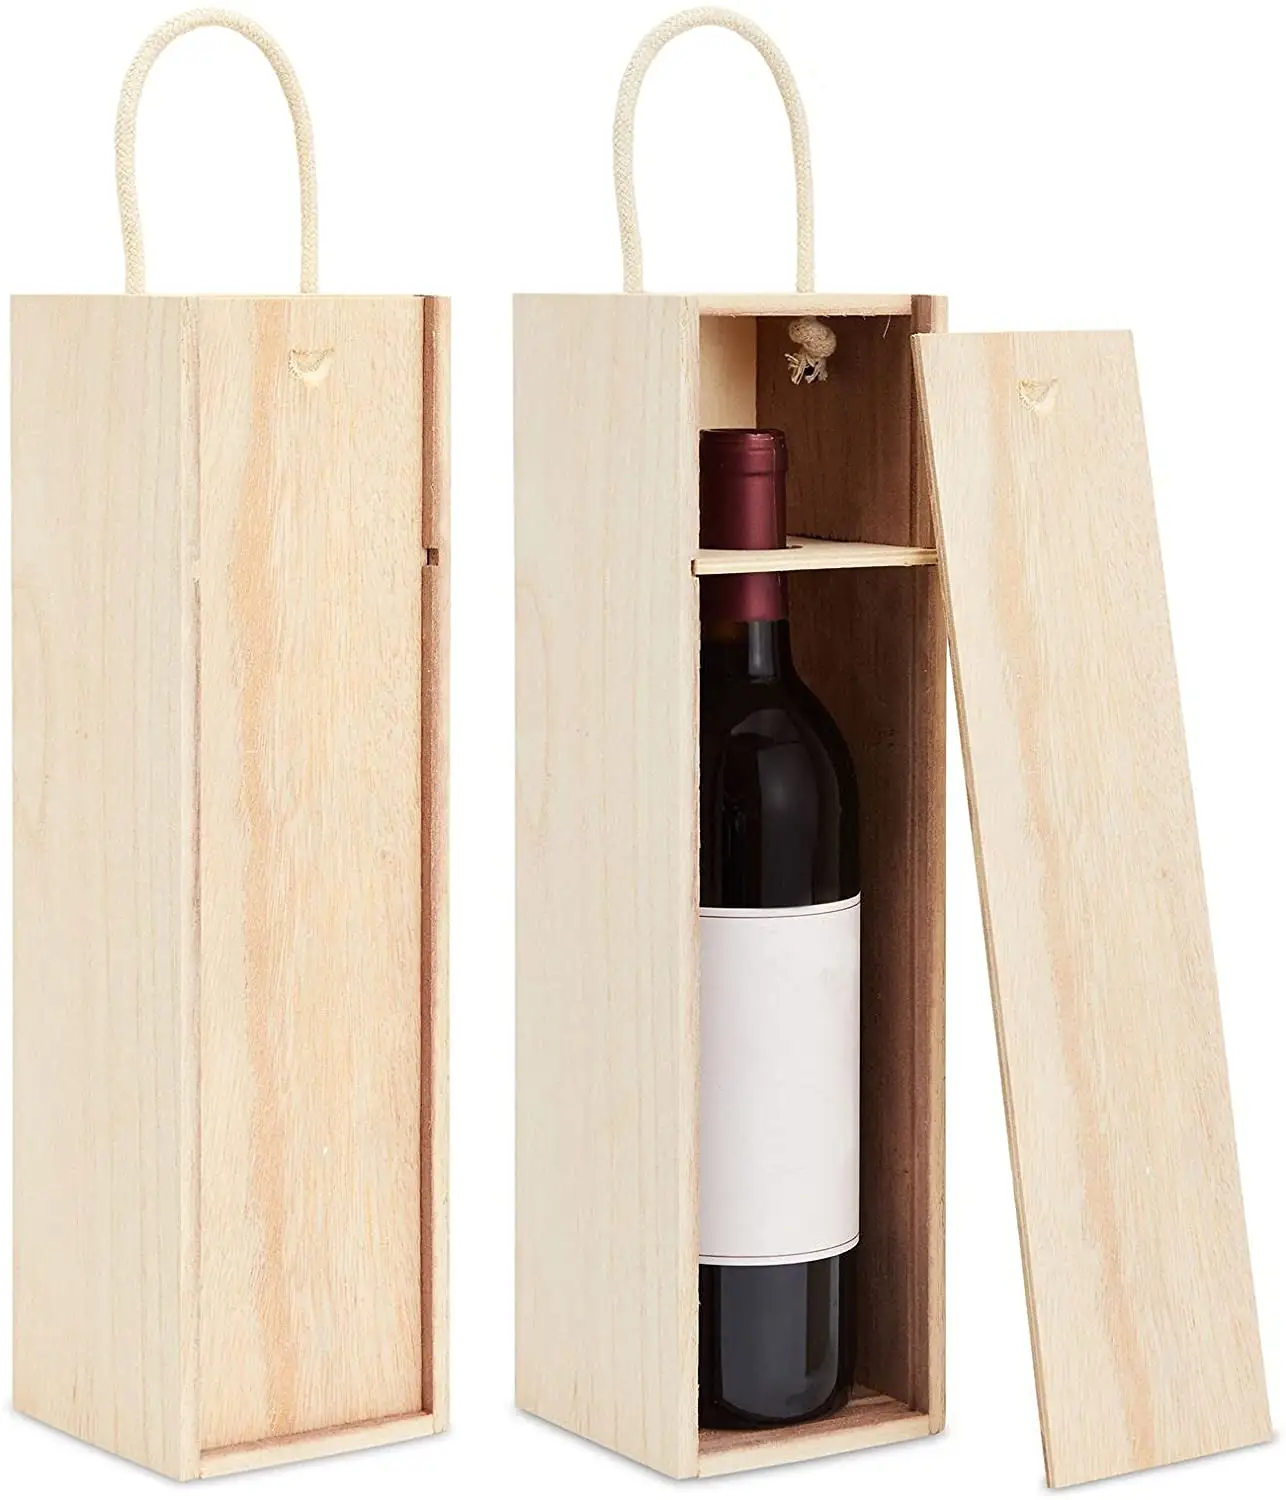 Atacado para caixas de vinho personalizadas, caixa de madeira ecológica de alta qualidade para vinho de luxo, chá e outros bebidas